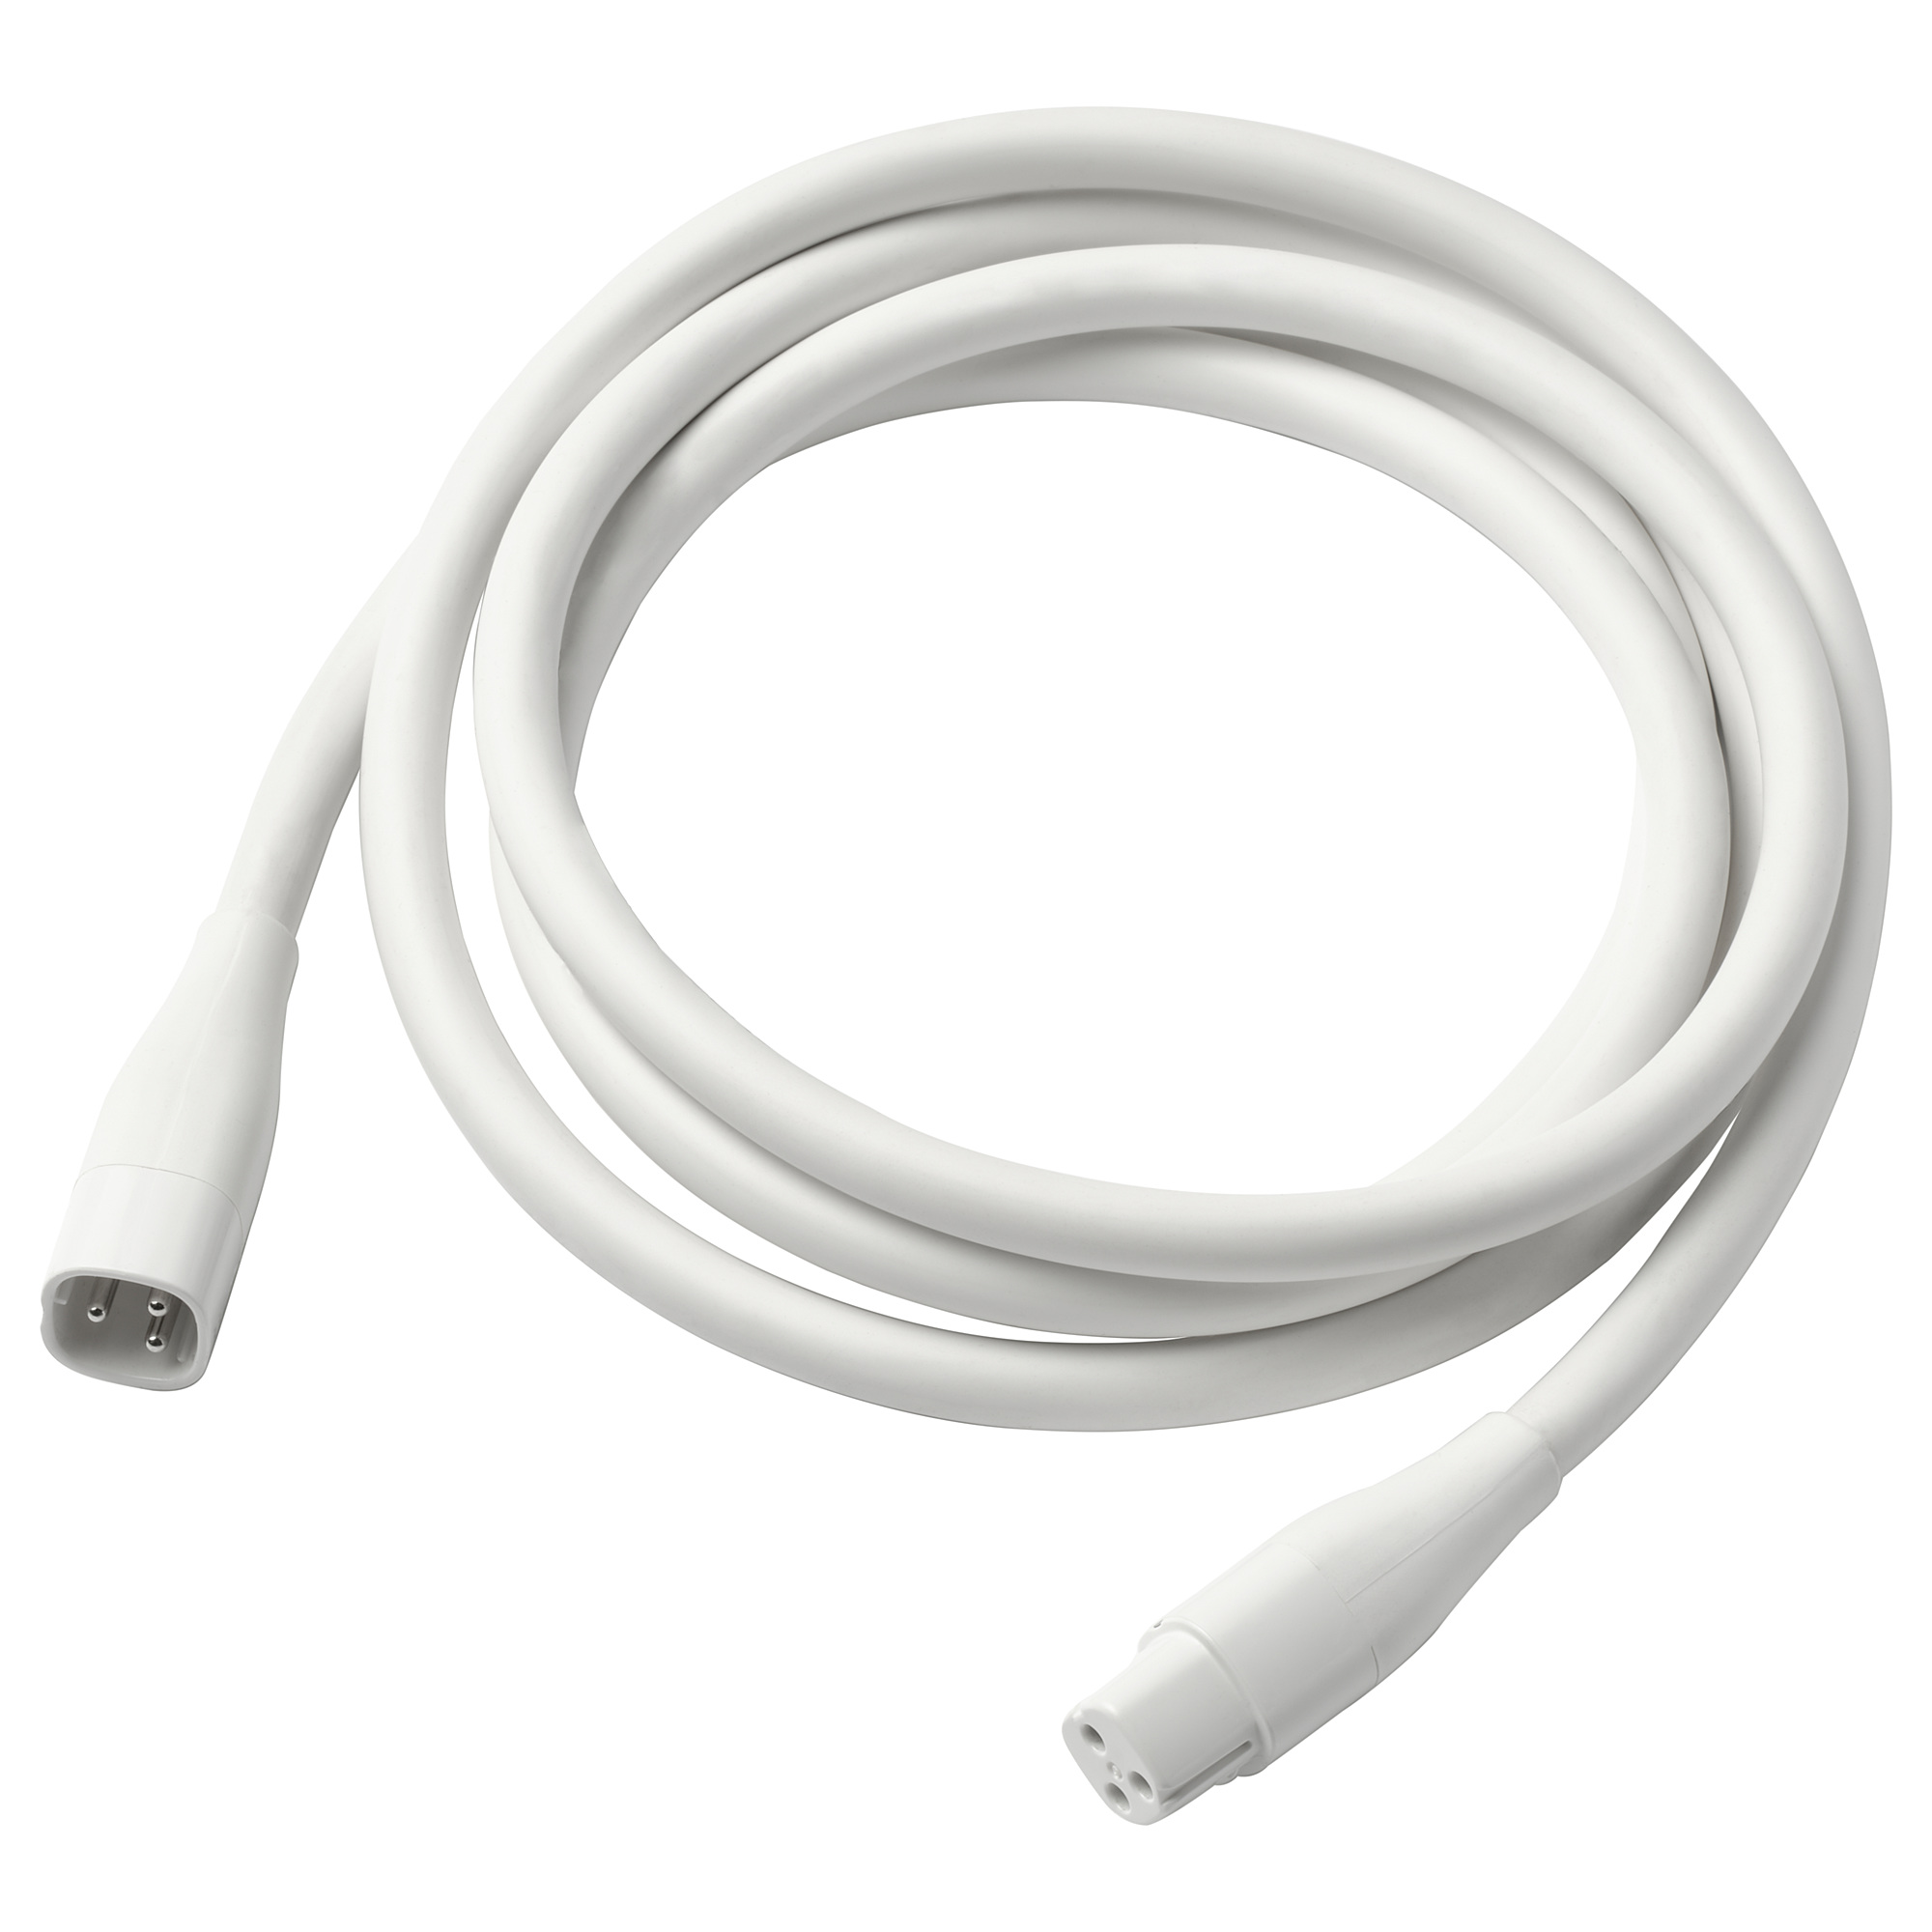 ÅSKVÄDER extension cord